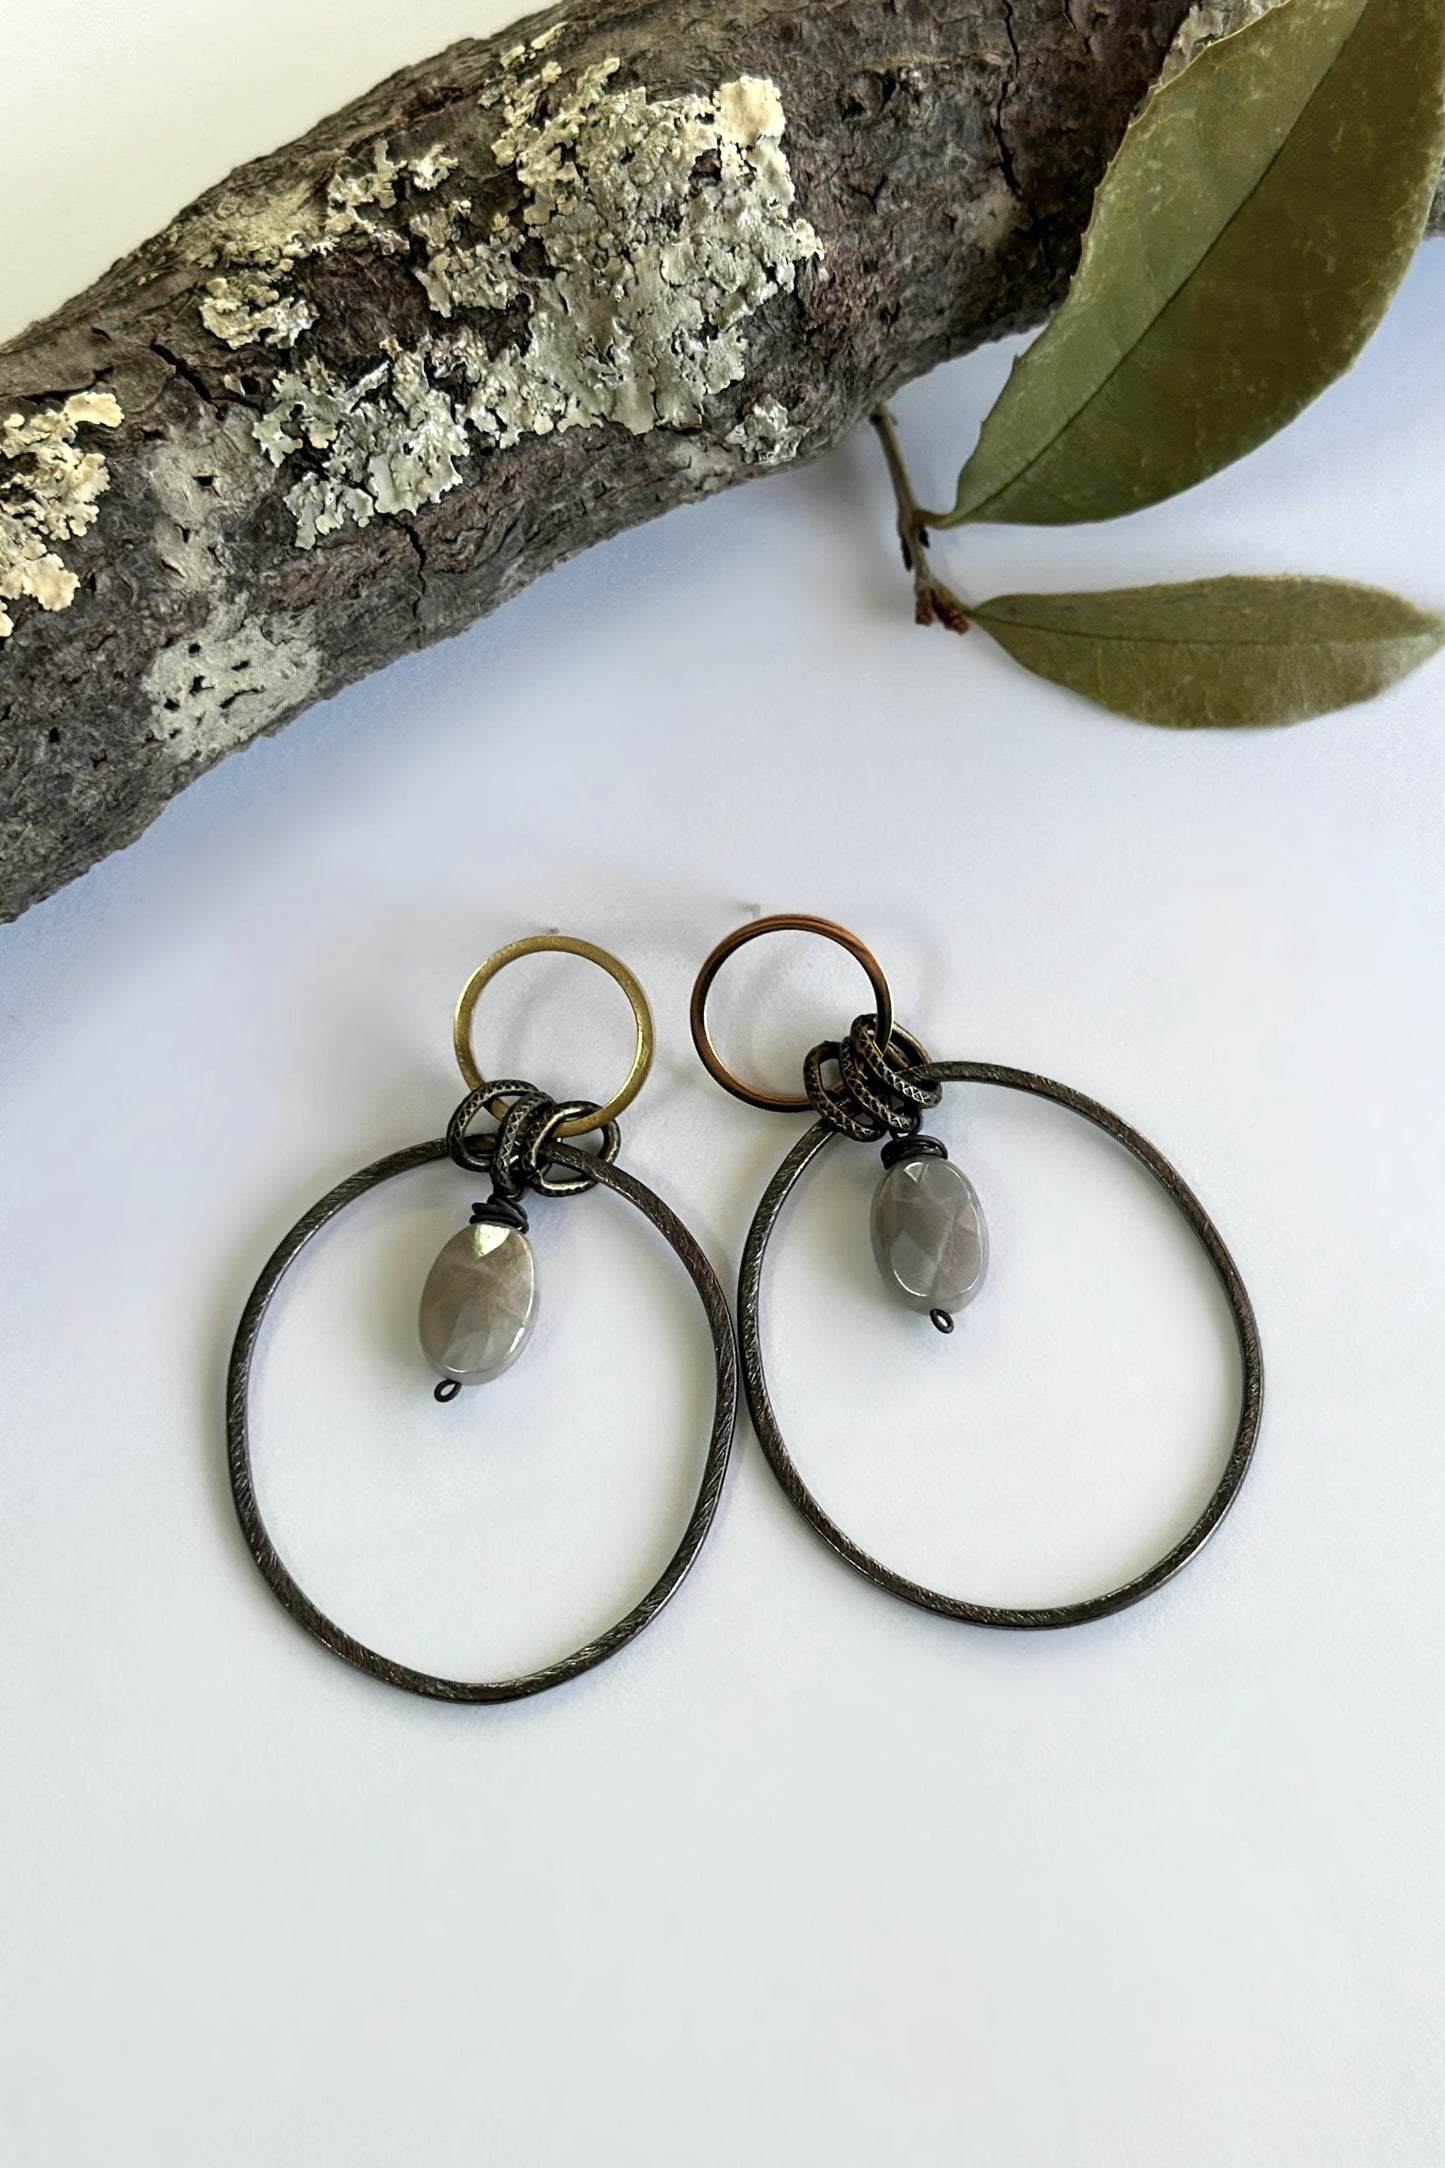 Spirit Lala Boho: 2 Circle Gold & Black Earrings in Labradorite